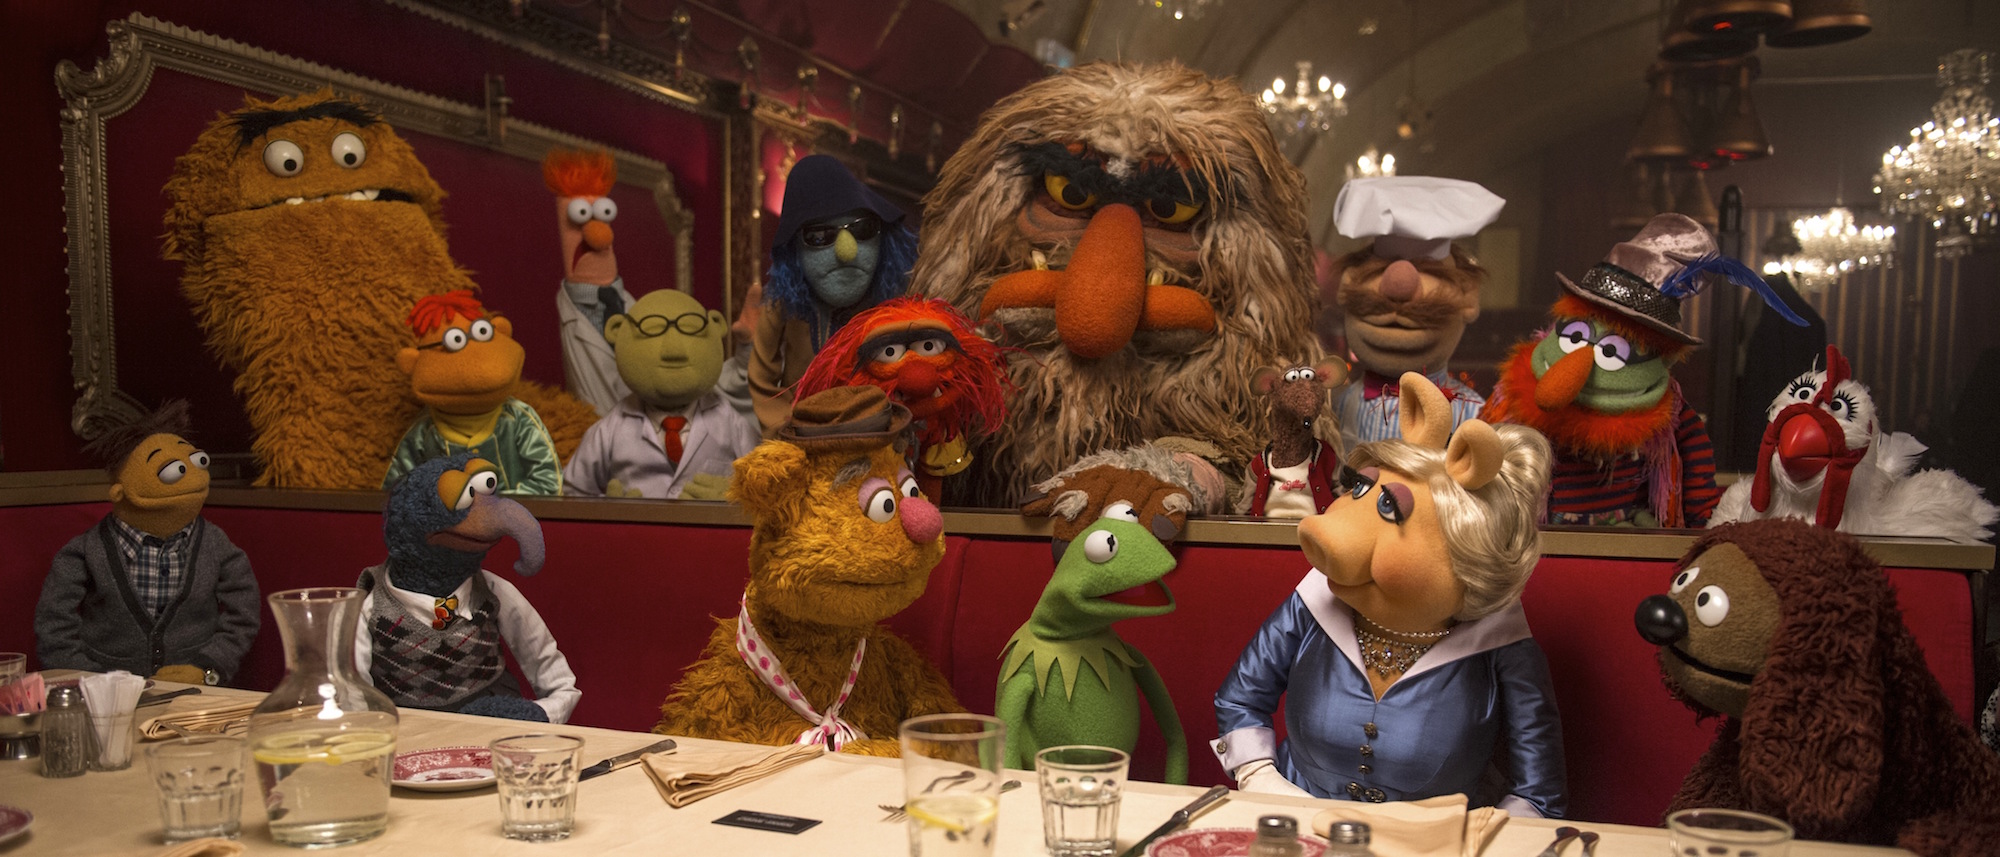 Muppets 2015